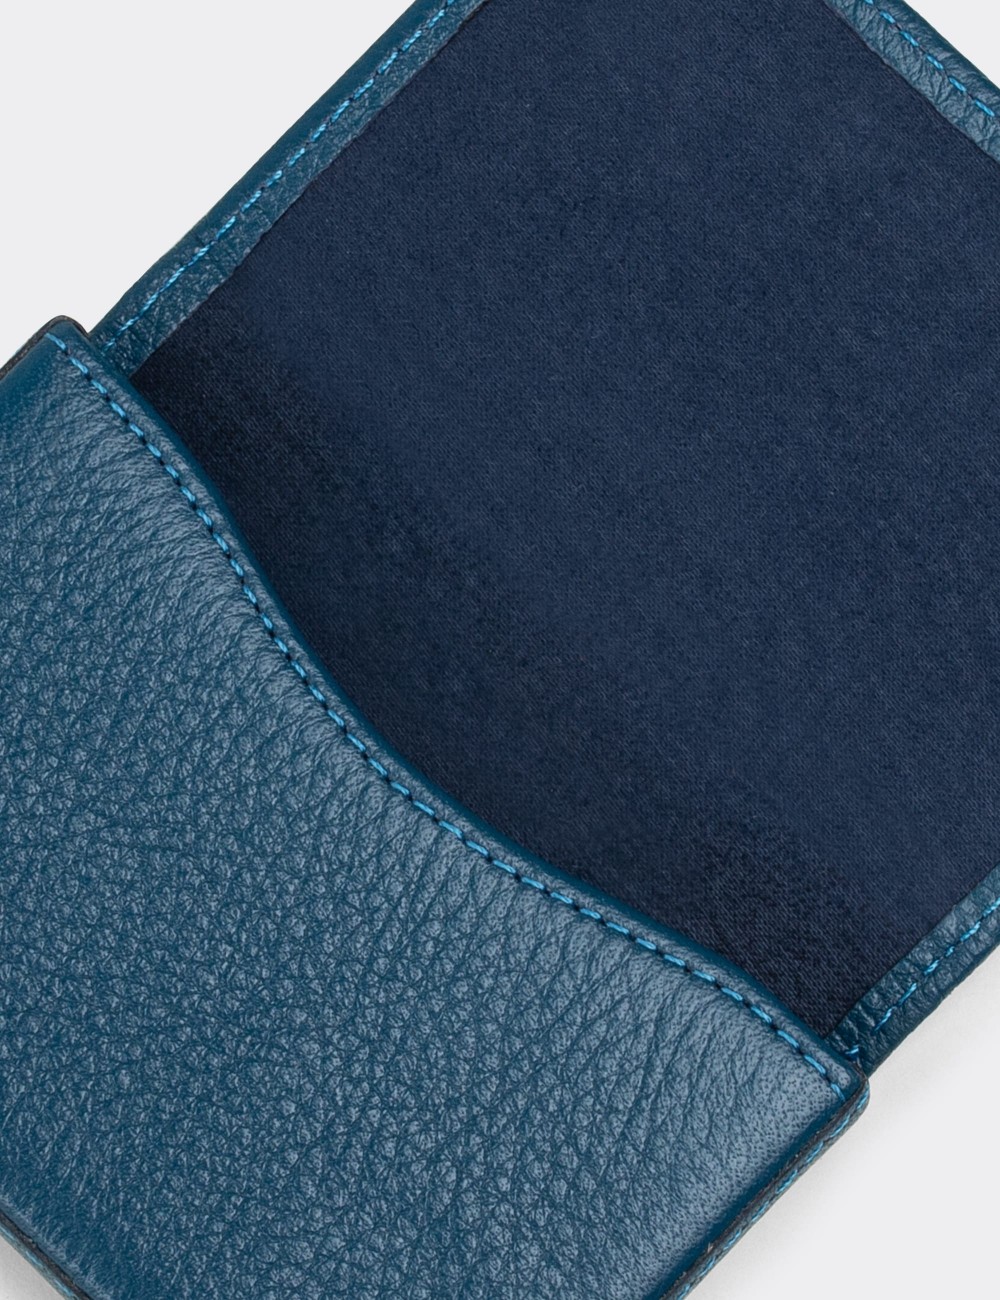  Leather Blue Men's Wallet - 00522MMVIZ01